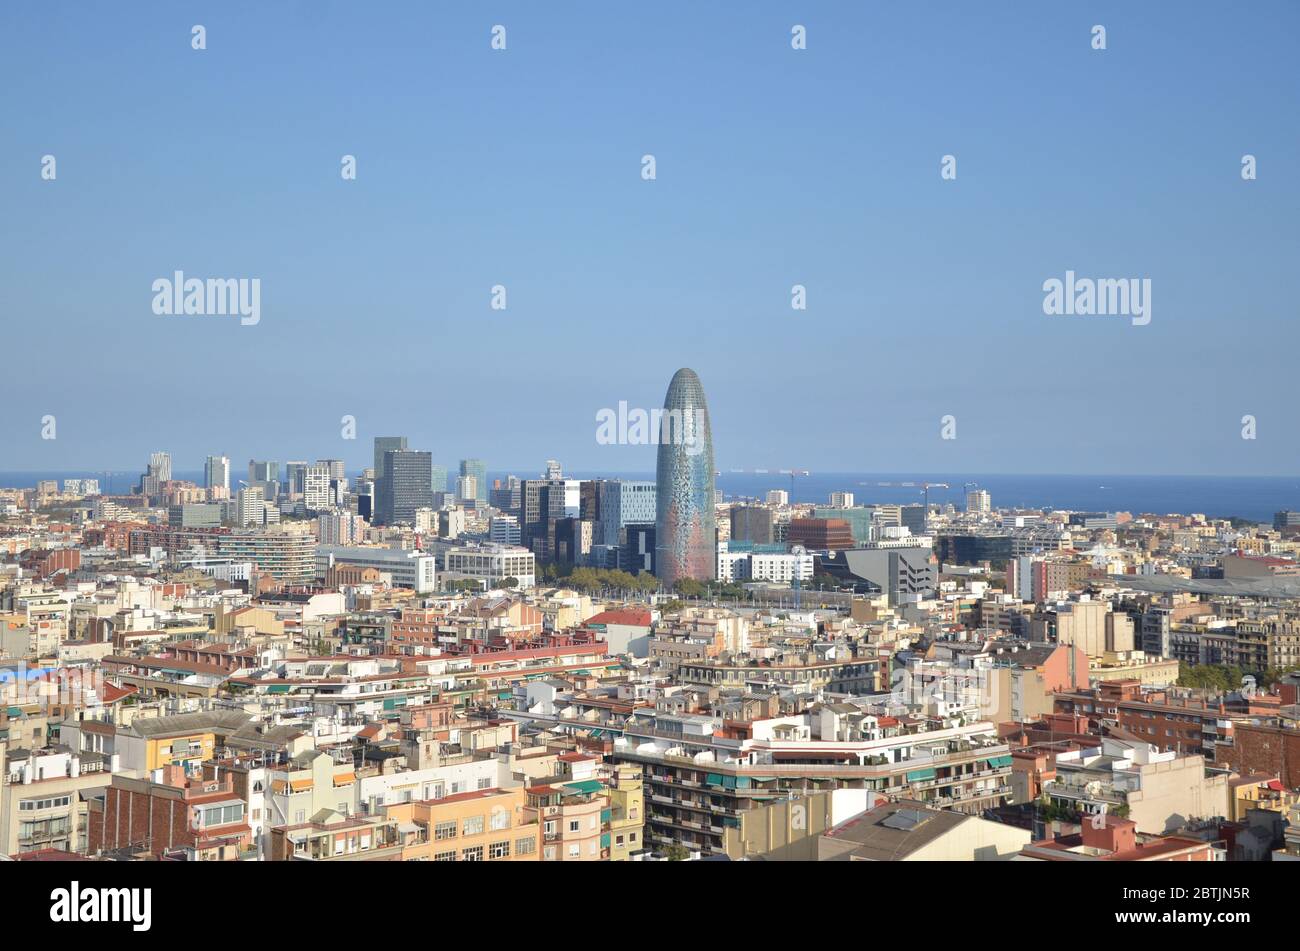 Barcellona, la capitale cosmopolita della Catalogna spagnola, è conosciuta per la sua arte e architettura. Foto Stock